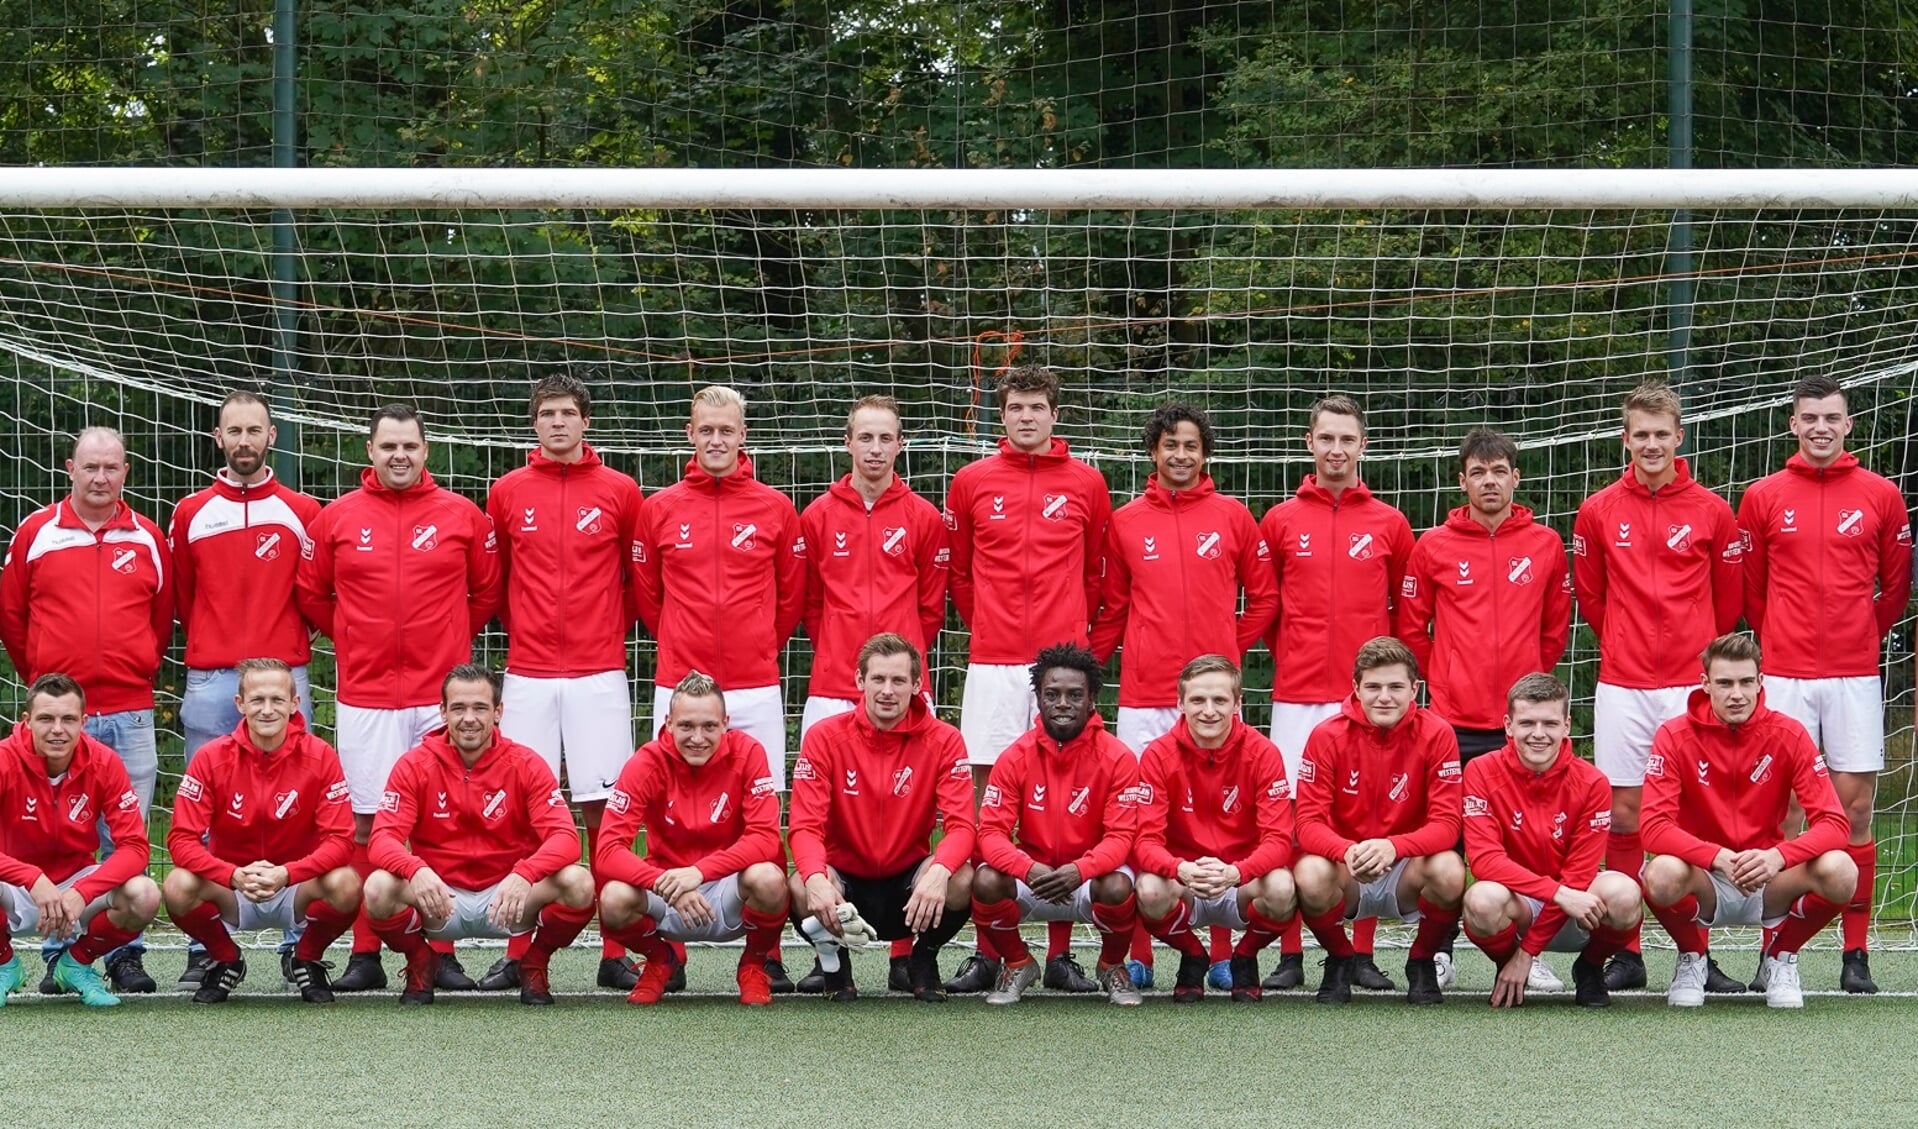 De selectie van voetbalvereniging Westerwolde met de nieuwe jassen. (eigen foto)